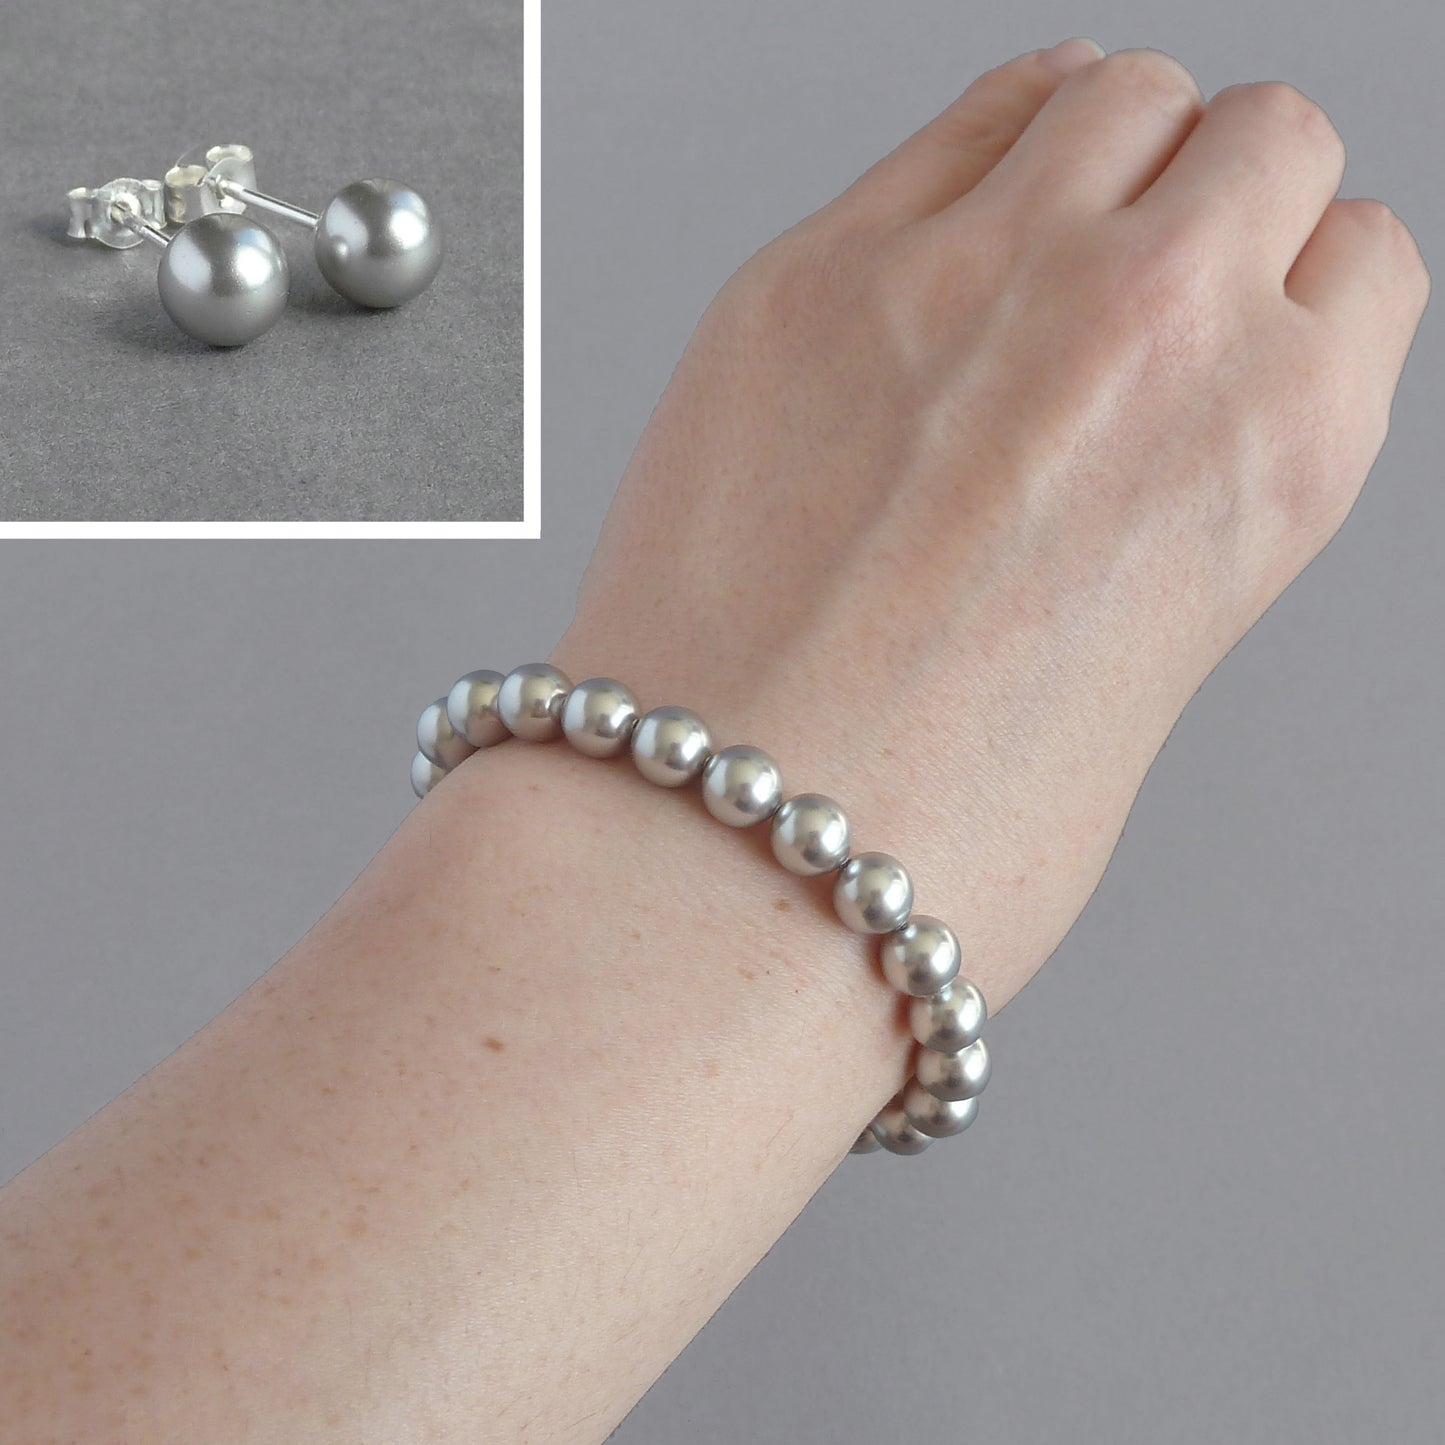 Pale grey pearl bracelet and earrings set